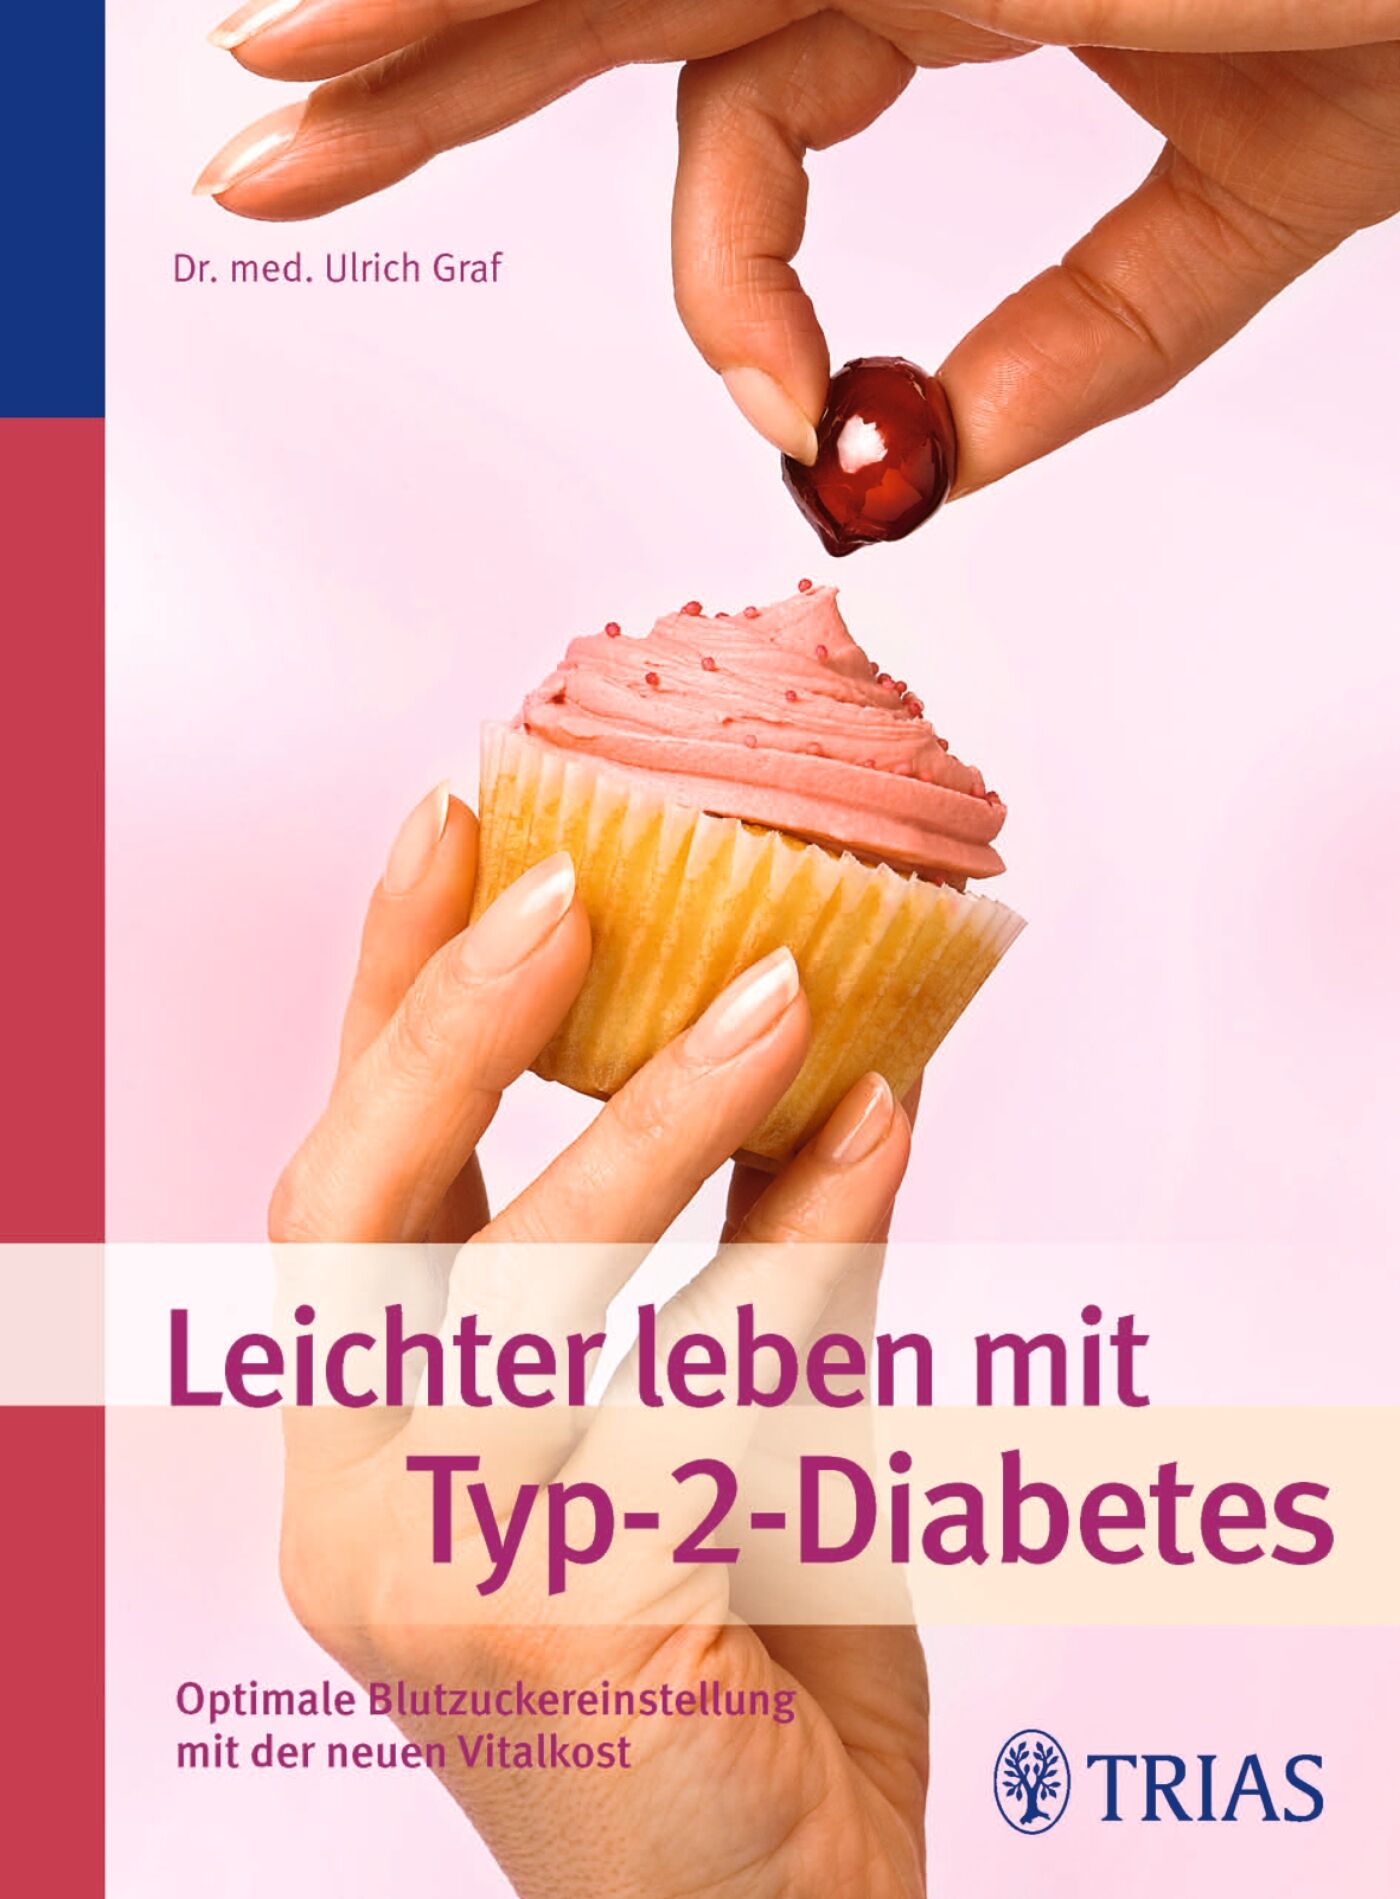 Leichter leben mit Typ-2-Diabetes, 9783830465164